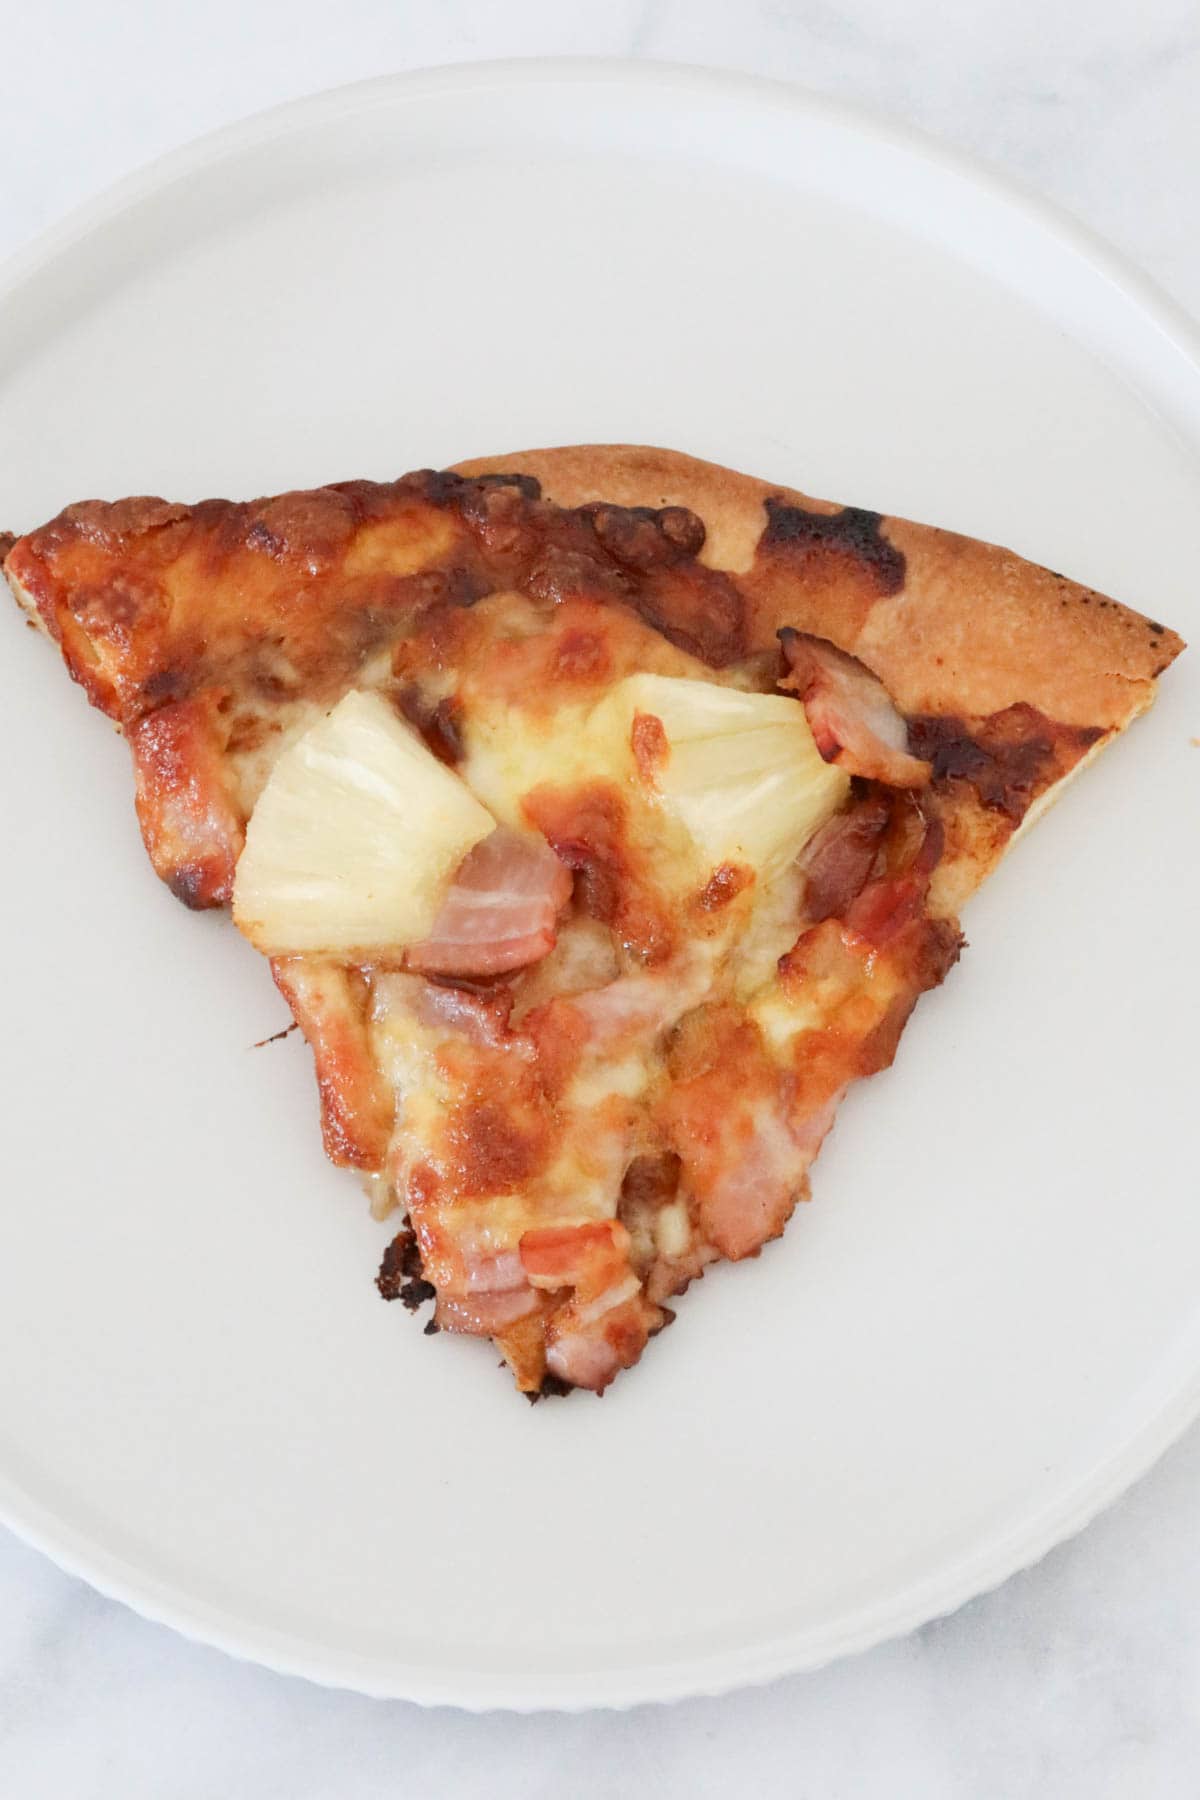 A Slice of Hawaiian pizza.